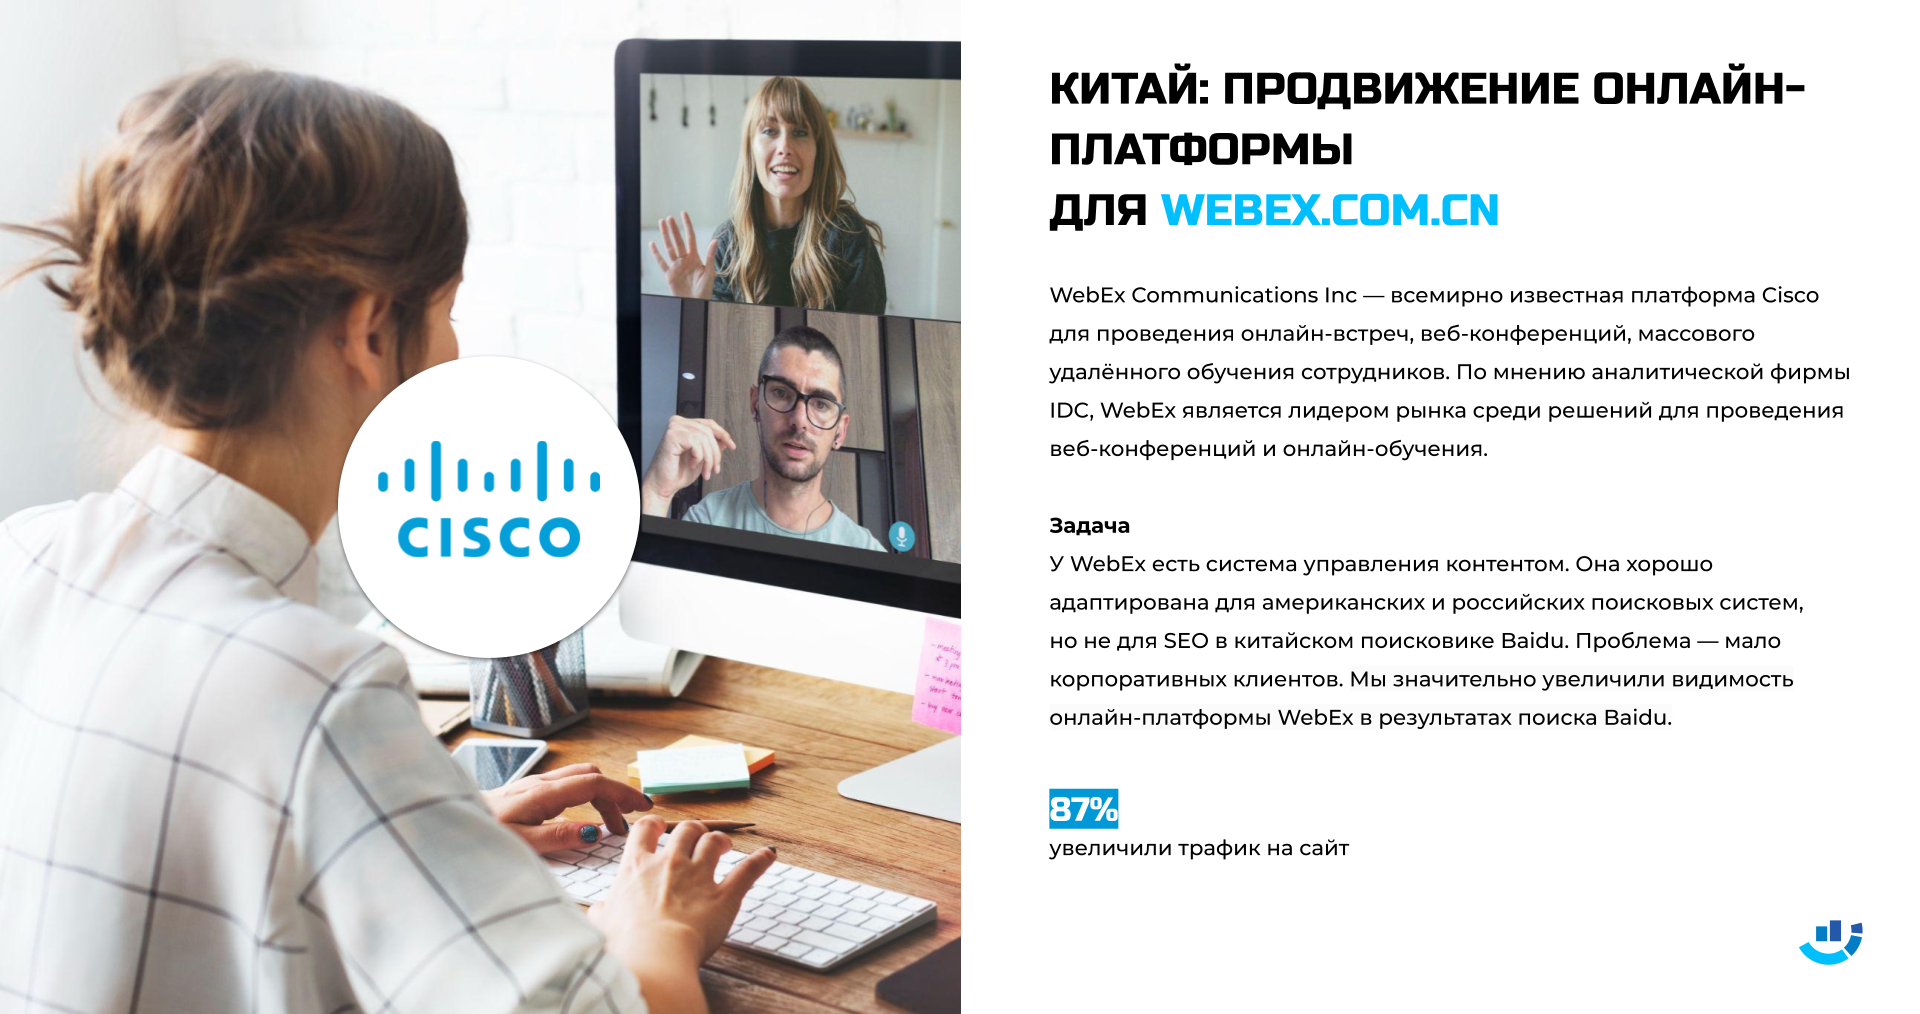 [Кейс] Веб-конференция. Продвижение сайта для всемирно известной платформы Cisco